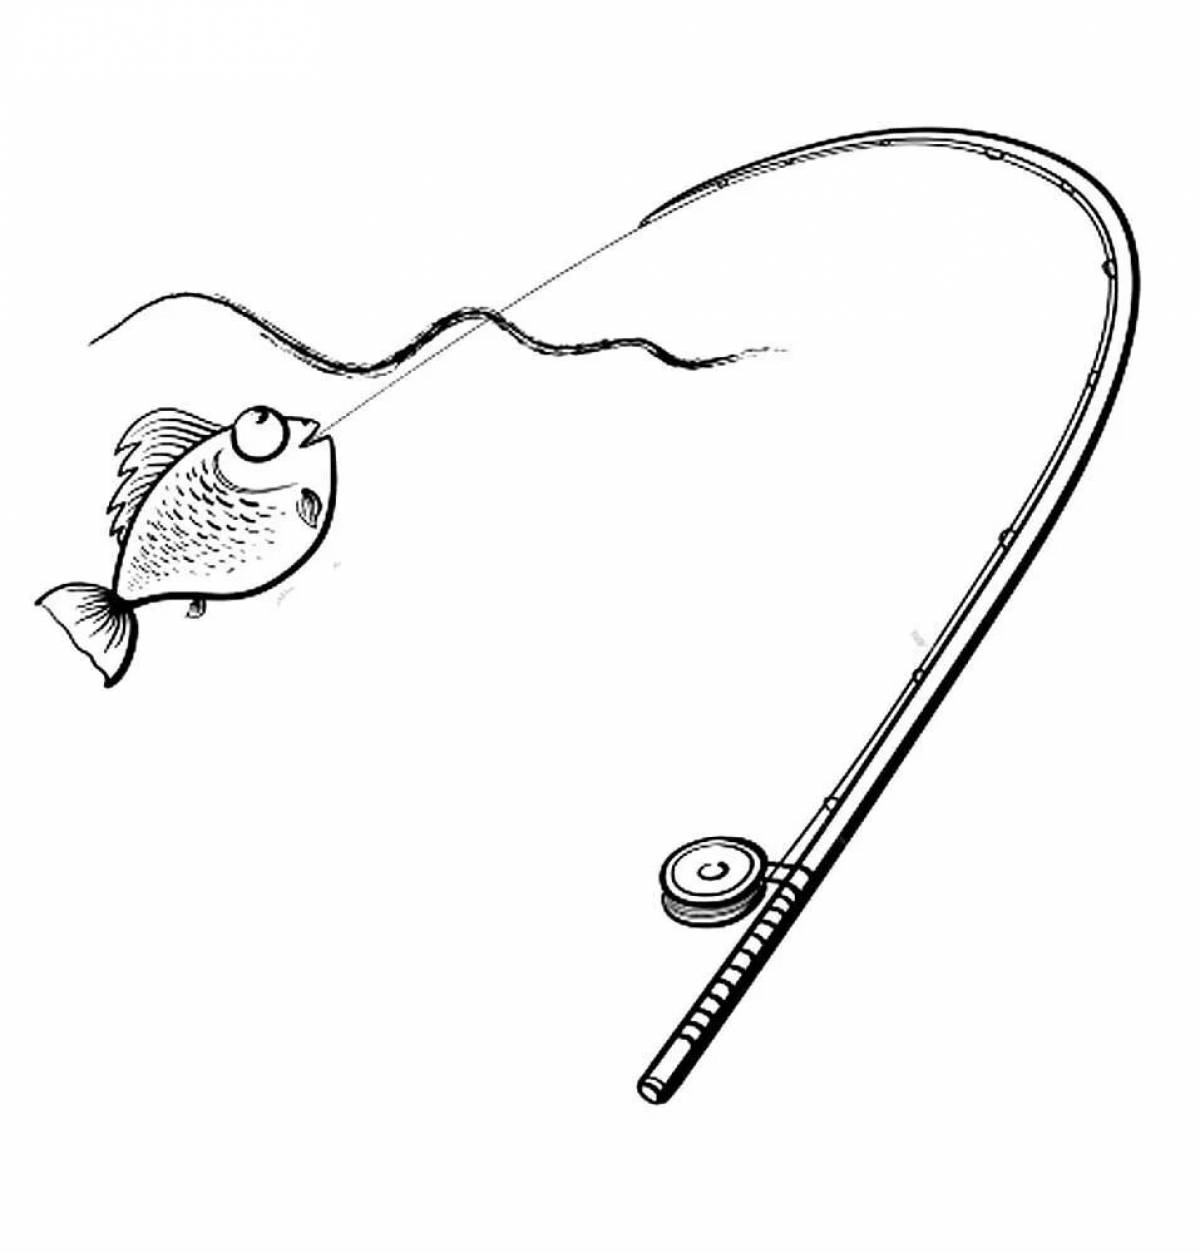 Children's fishing rod #22